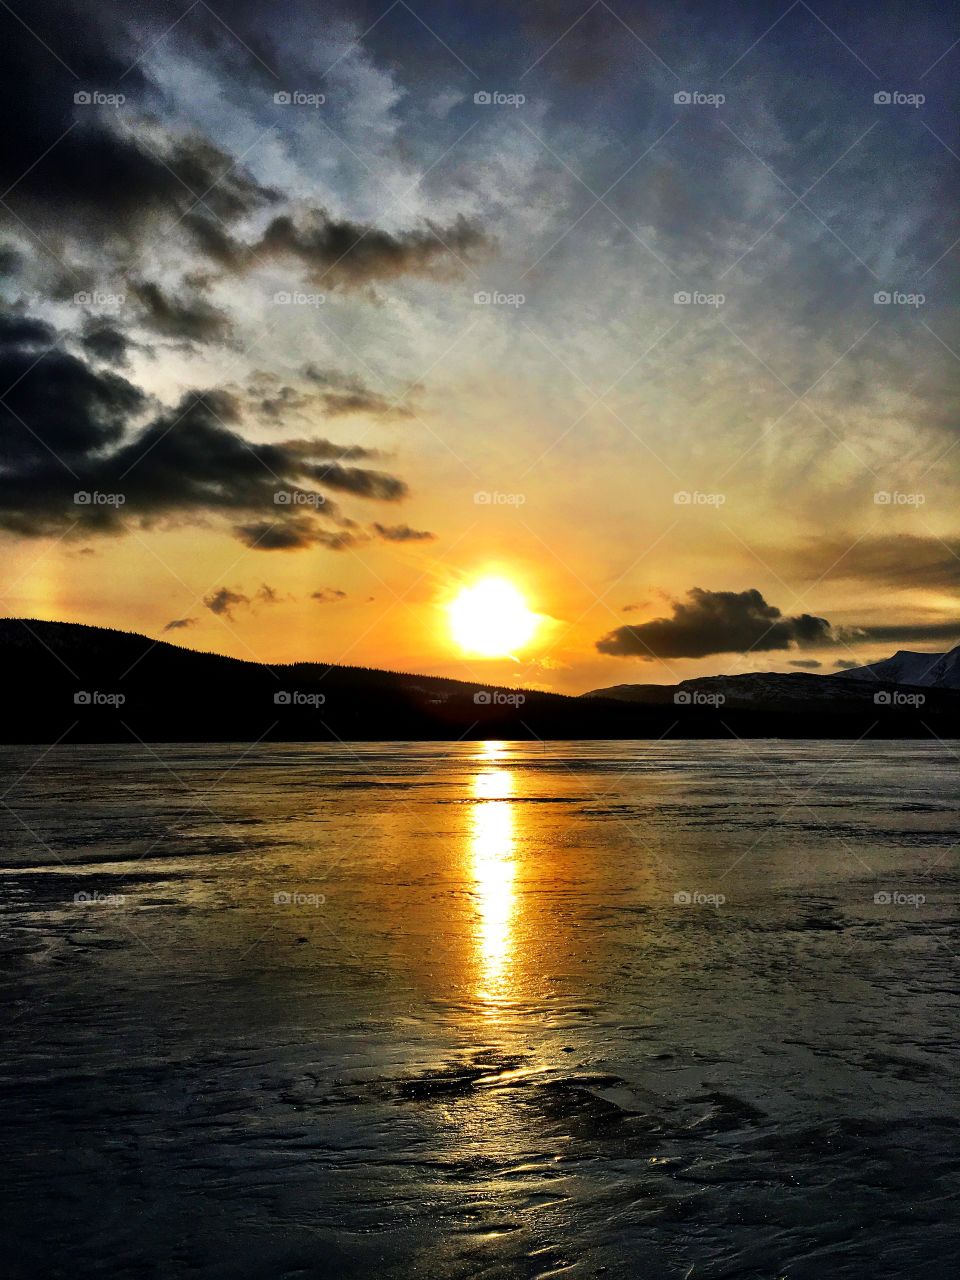 Sunset on icy lake 